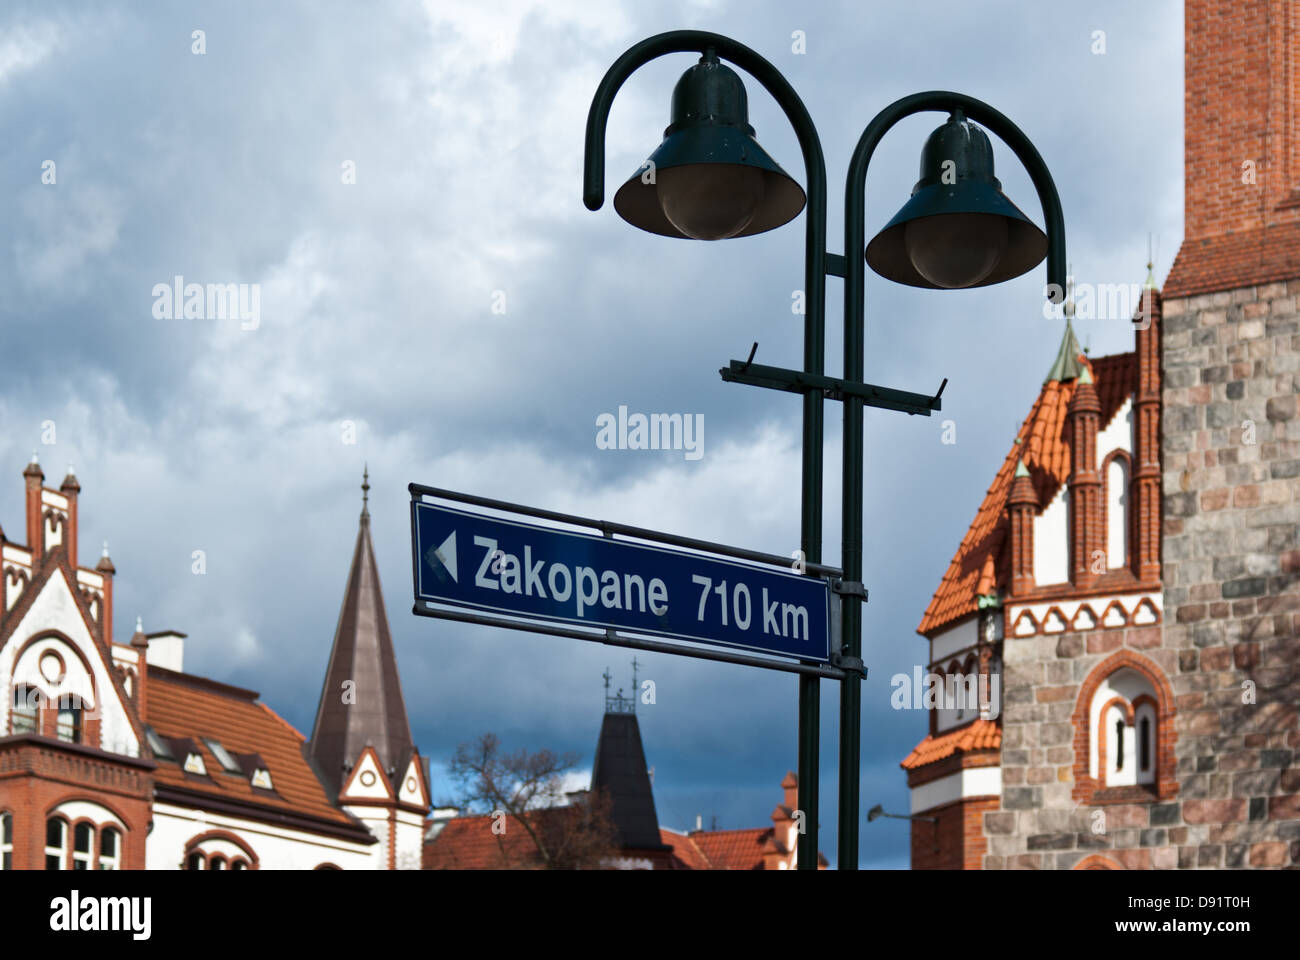 Zakopane 710km Road Sign, Sopot, Poland Stock Photo